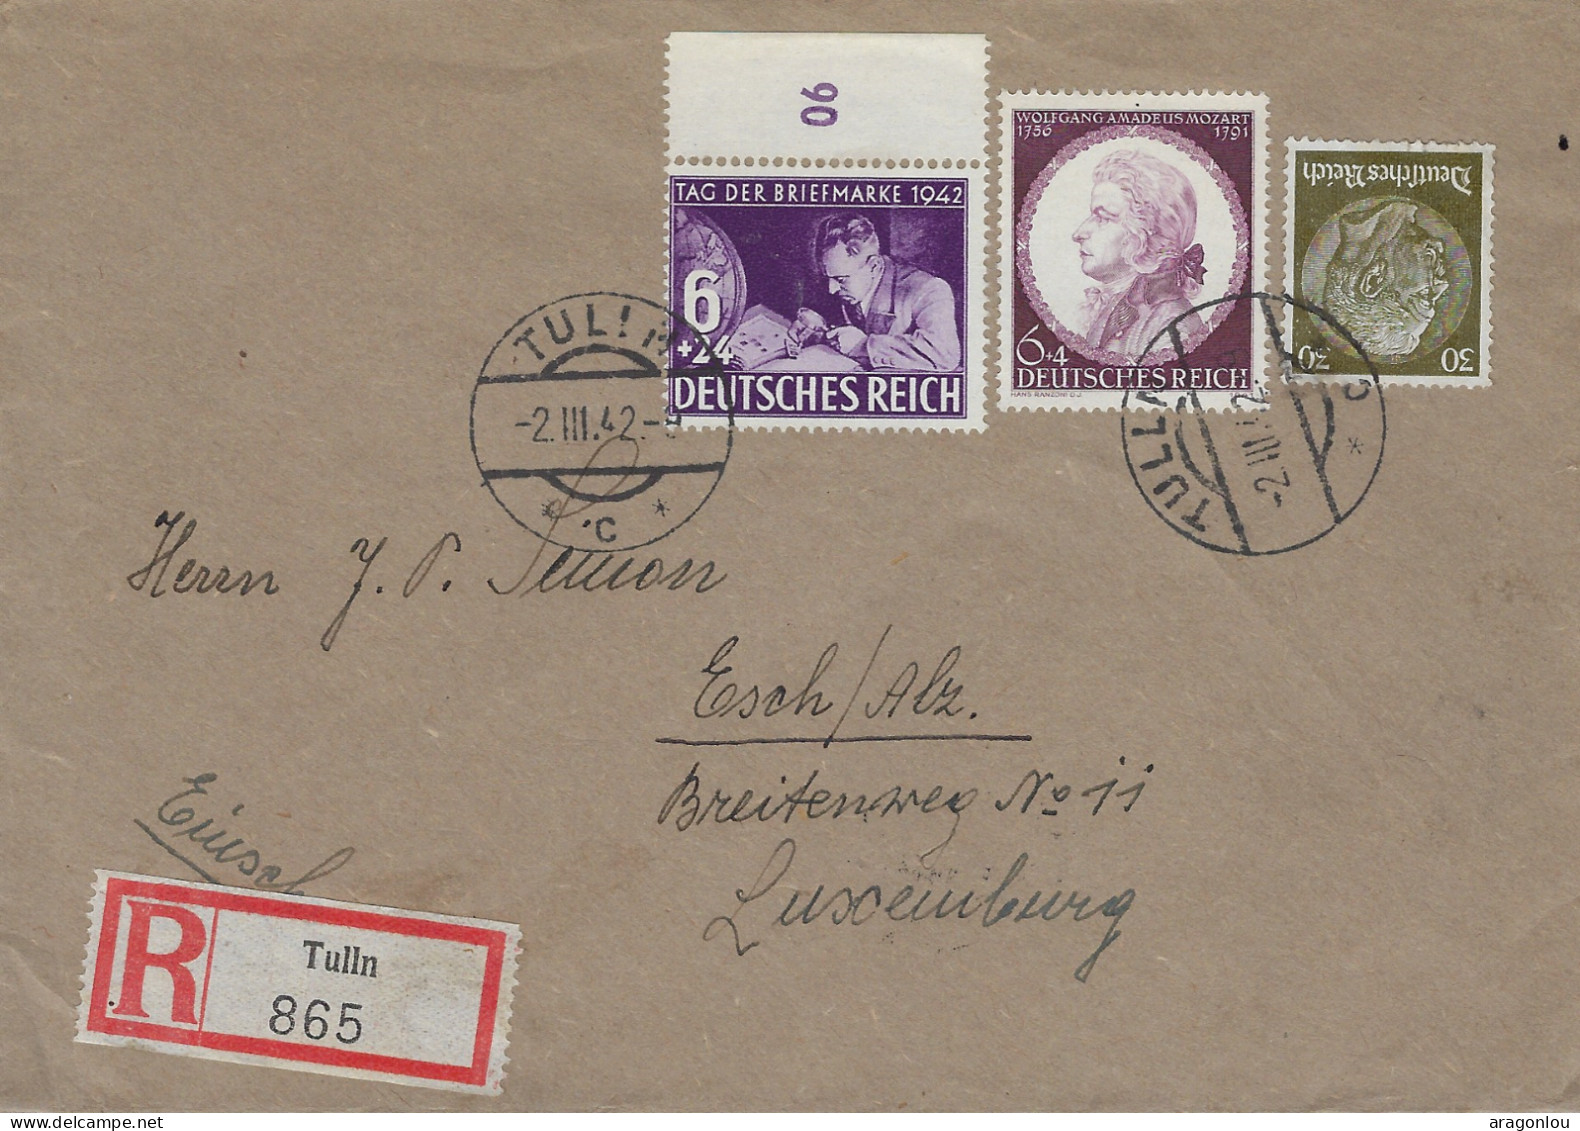 Luxembourg - Luxemburg - Lettre   Recommandé  1942   Occupation - Adressiert An J.P. Simon , Esch / Alzette - 1940-1944 Deutsche Besatzung